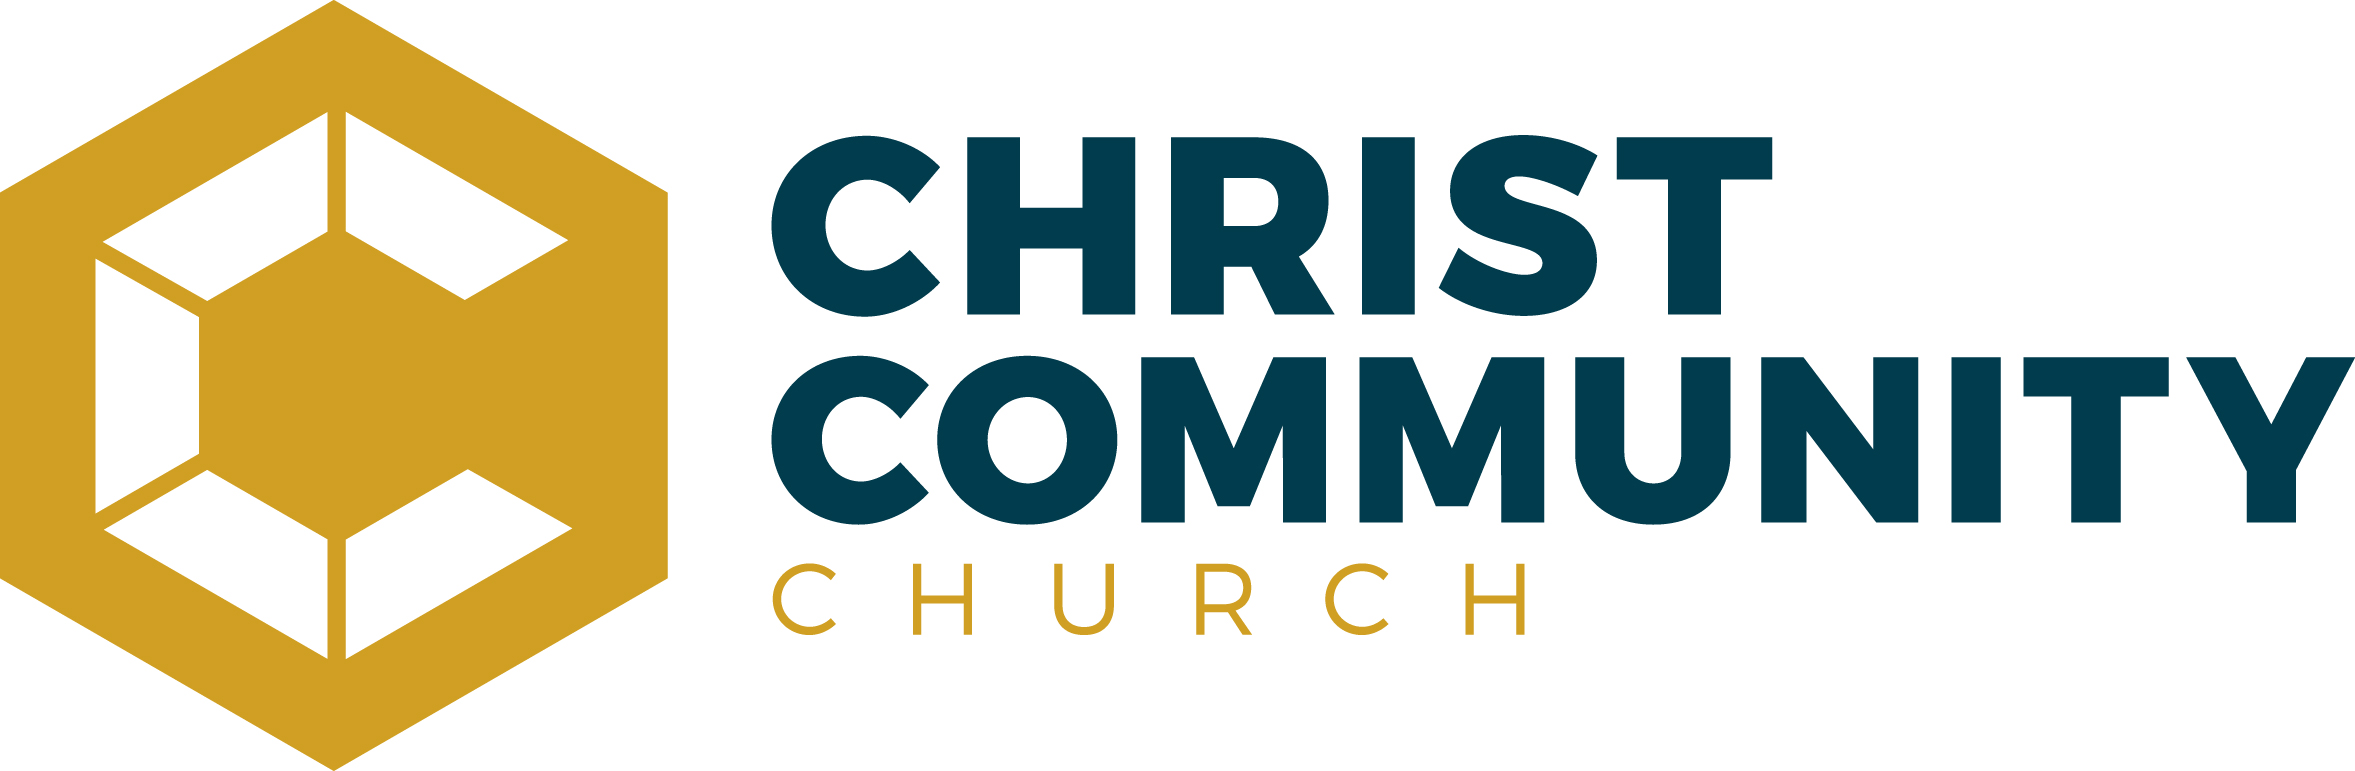 Christian Jobs at Churches, Schools, & Nonprofits | Vanderbloemen